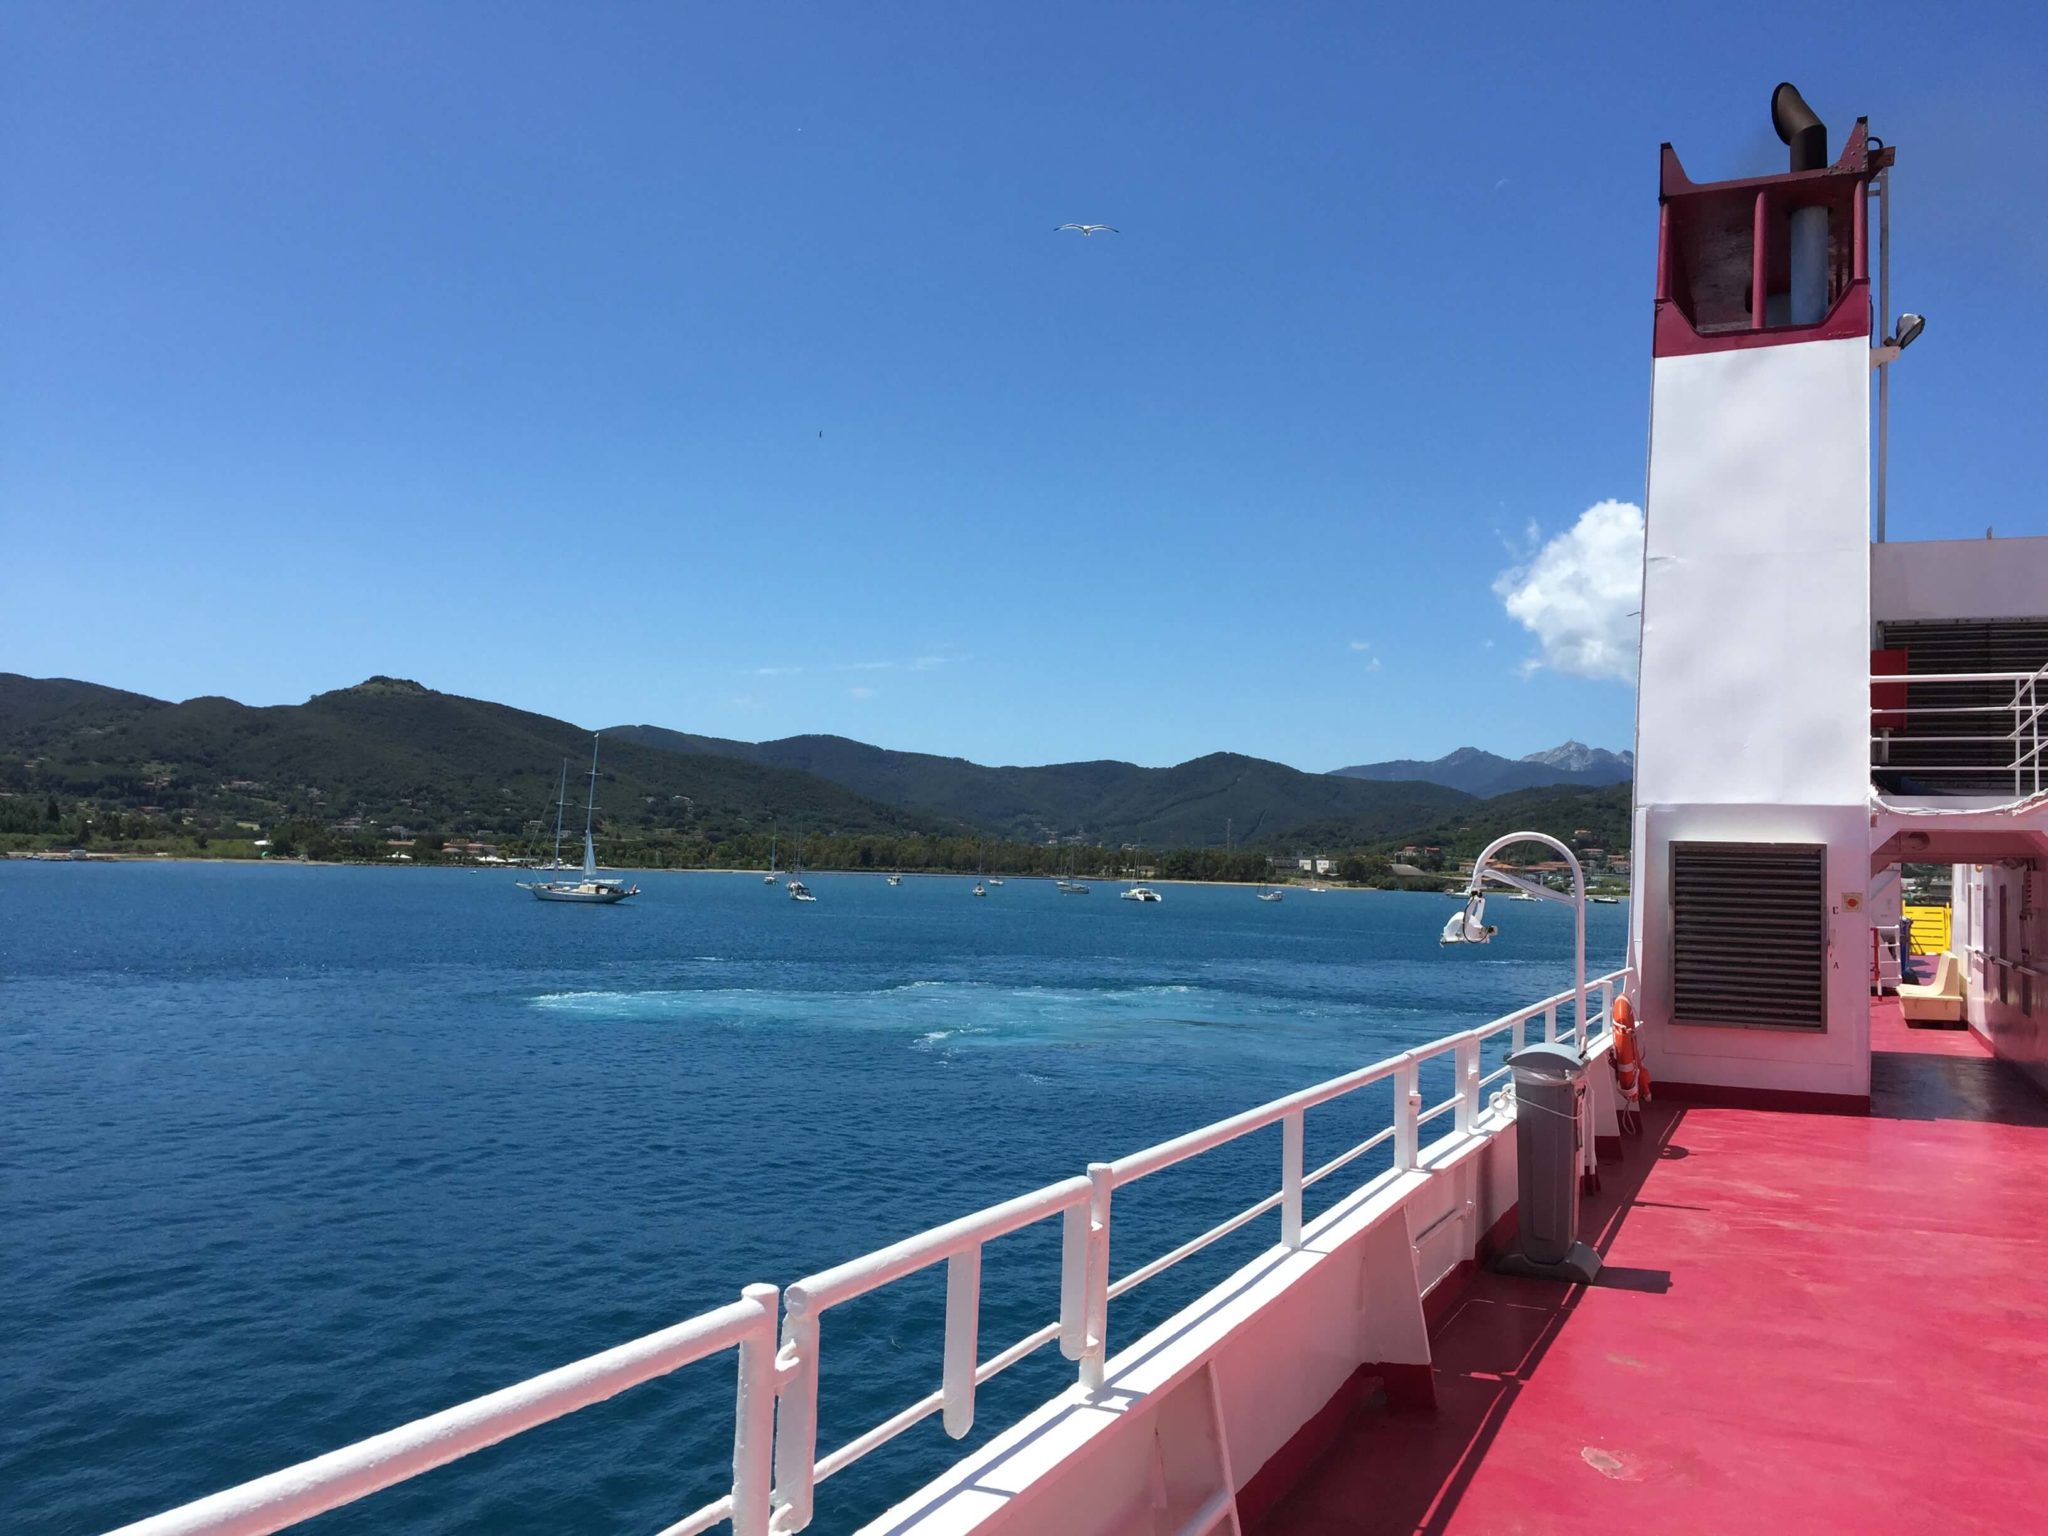 Cubierta ferry Toremar Aethalia